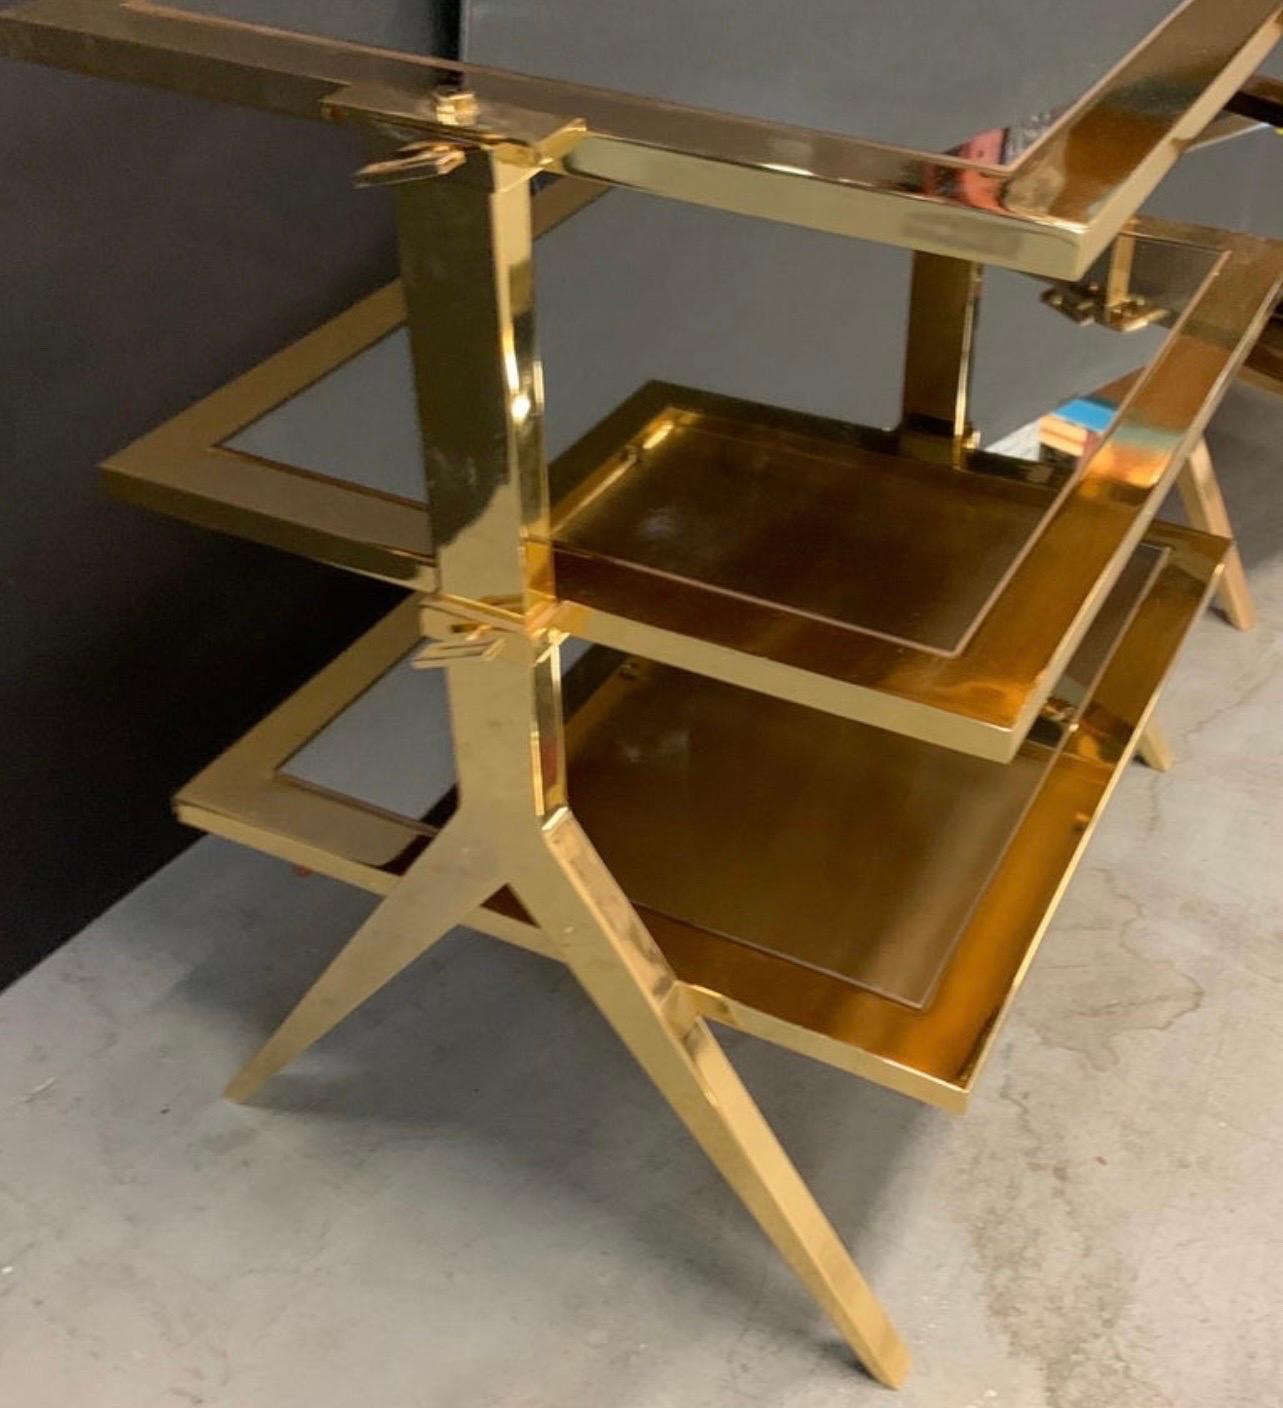 Magnifique table d'appoint moderne Lorin Marsh en laiton poli et miroir à trois niveaux

Mesures :
28.5